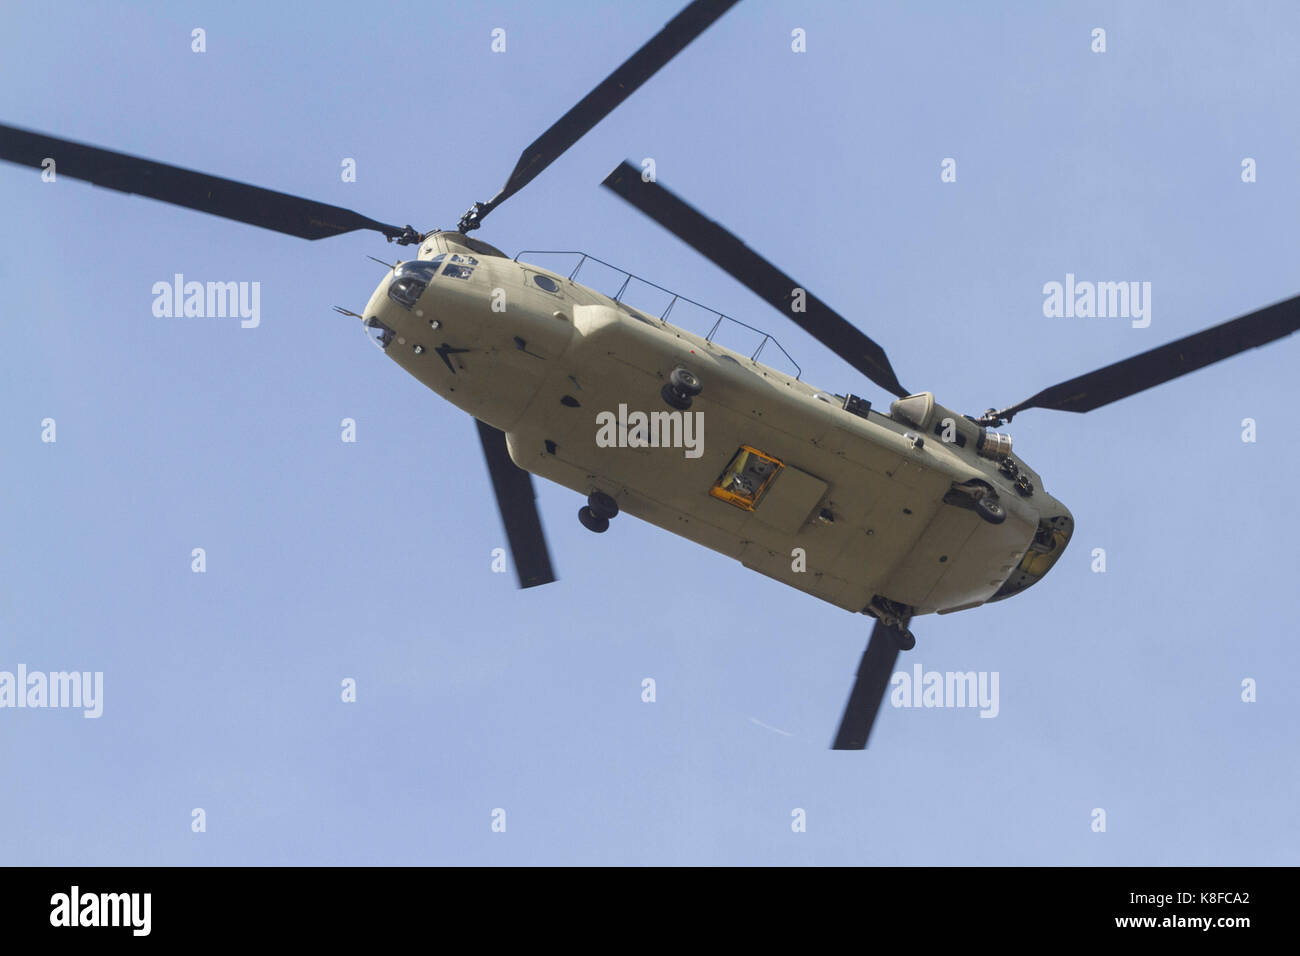 Londres, Royaume-Uni. Sep 19, 2017. Un Boeing CH-47 bimoteur américain, tandem-rotor, hélicoptère gros porteur militaire Chinook helicopters battant lors d'un exercice d'entraînement à Londres Banque D'Images